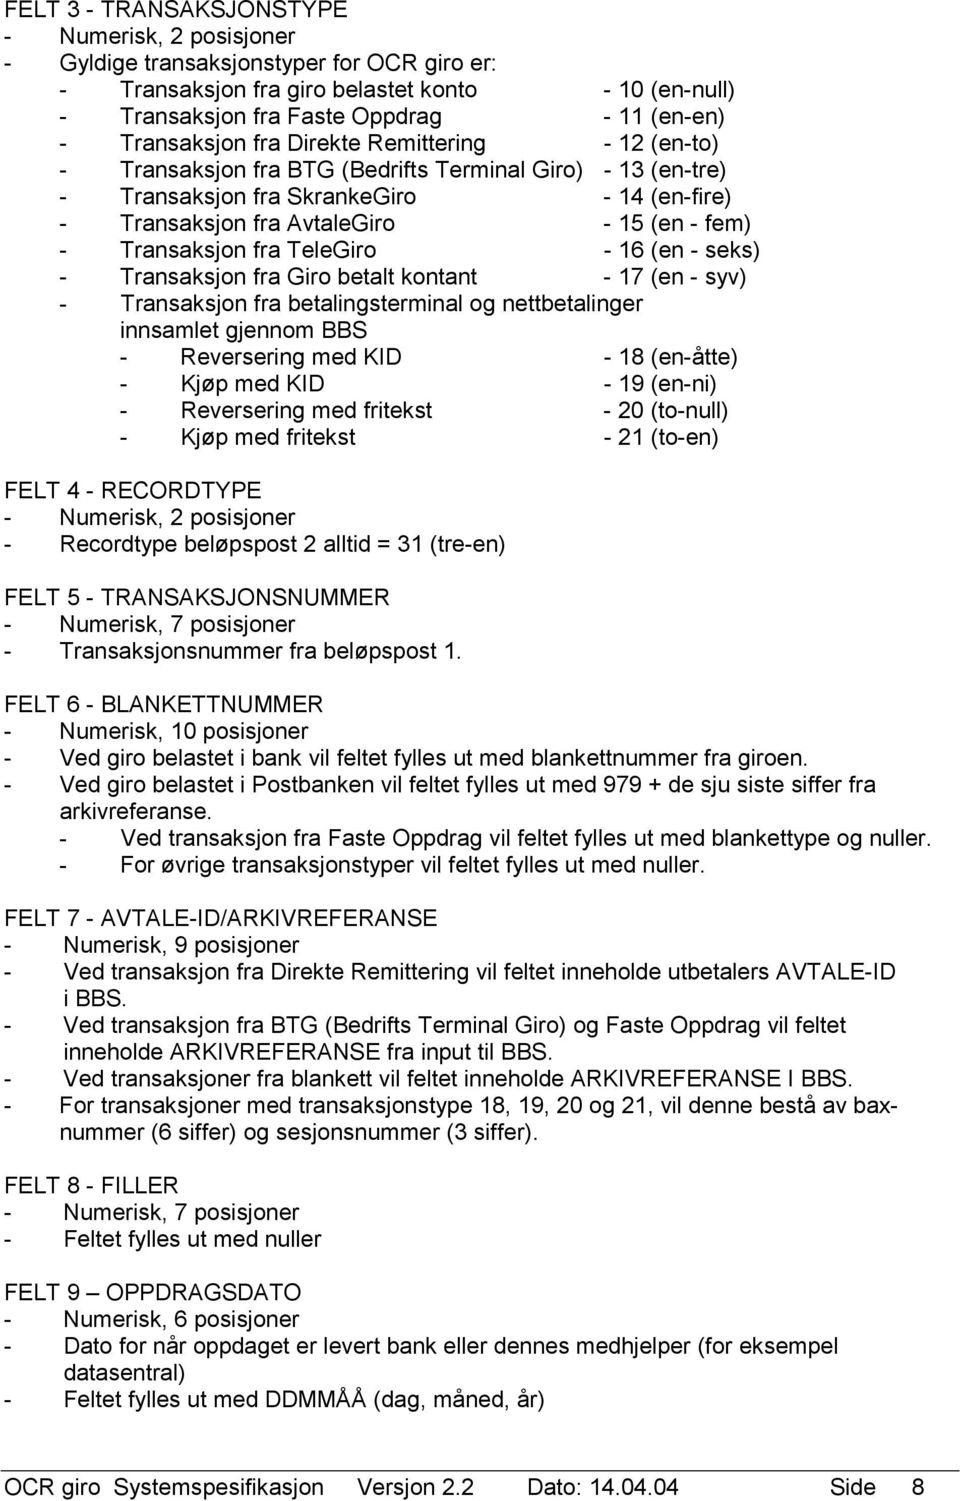 TeleGiro - 16 (en - seks) - Transaksjon fra Giro betalt kontant - 17 (en - syv) - Transaksjon fra betalingsterminal og nettbetalinger innsamlet gjennom BBS - Reversering med KID - 18 (en-åtte) - Kjøp